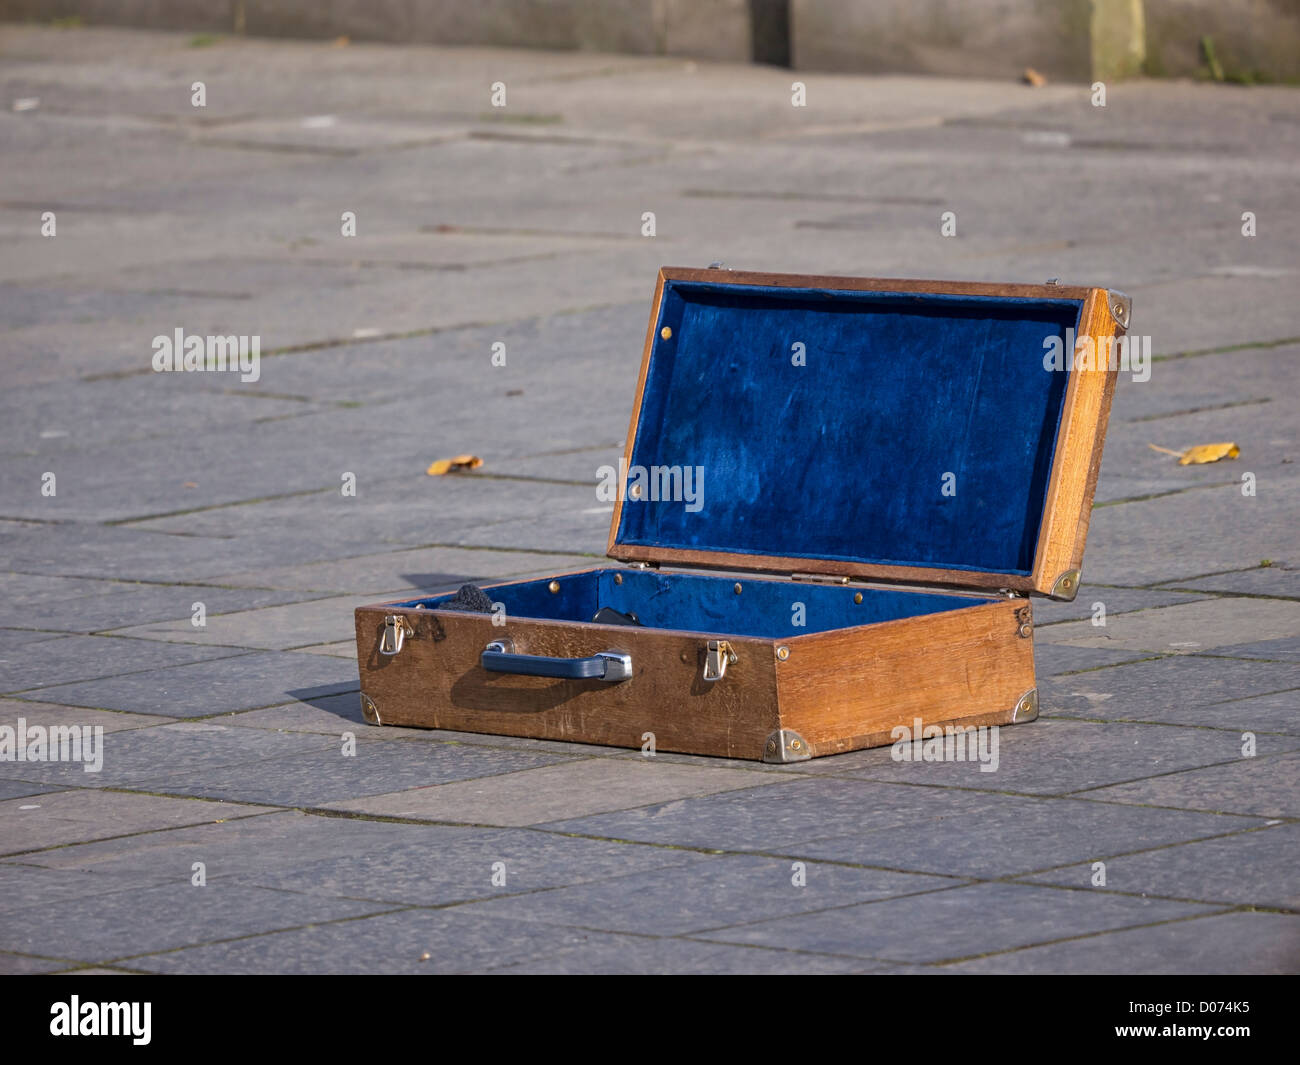 Una vecchia scatola di legno utilizzata da un suonatore ambulante di strada per la raccolta di fondi per la sua prestazione. Sulla strada di Edimburgo, in Scozia. Foto Stock